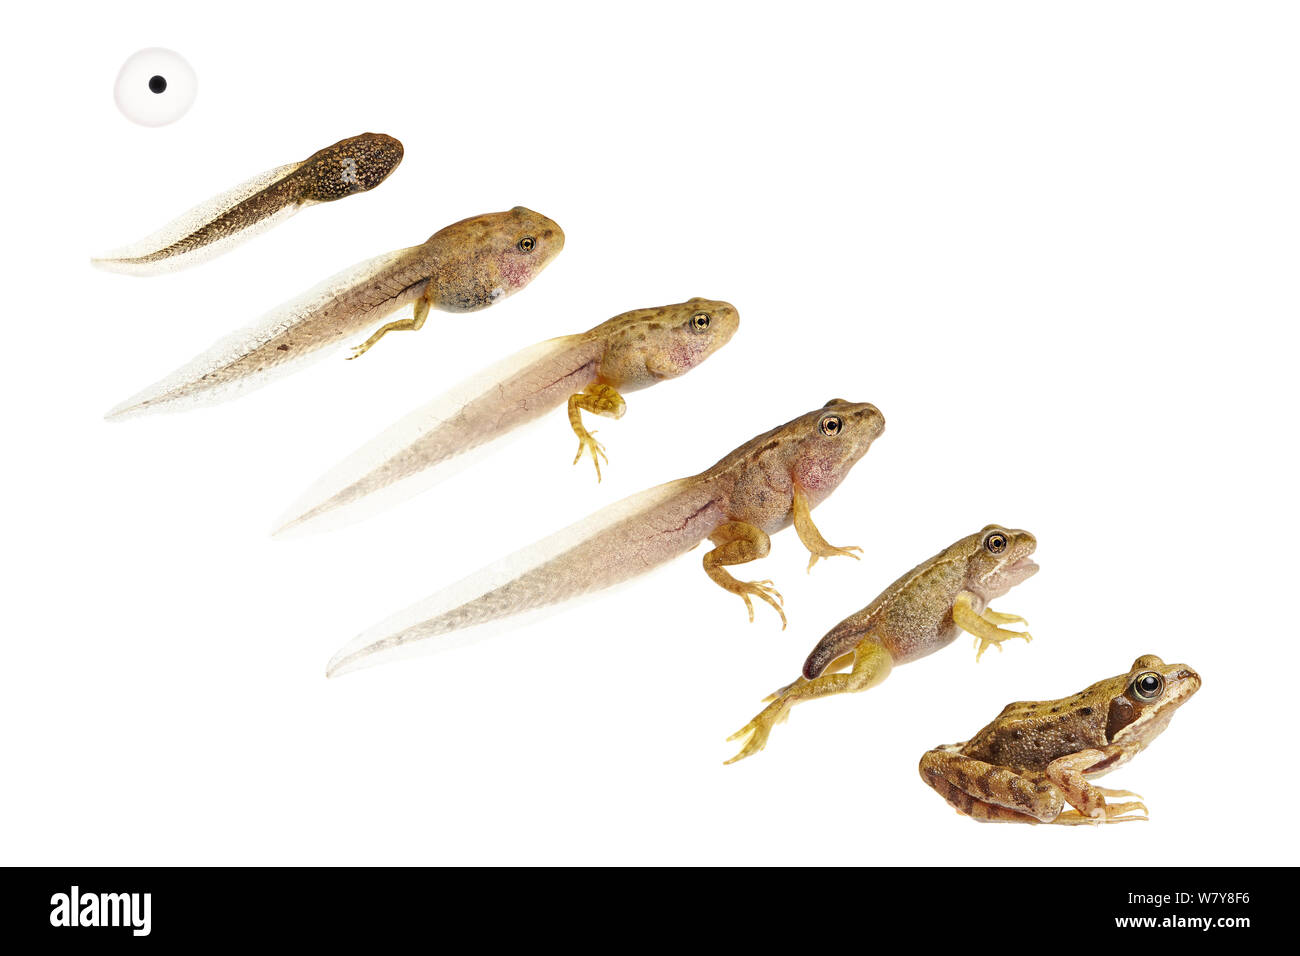 Immagine composita mostra di sviluppo / ciclo di vita della rana comune (Rana temporaria) da uovo a tadpole per adulto. Worcestershire, Regno Unito, maggio. meetyourneighbors.net progetto Foto Stock